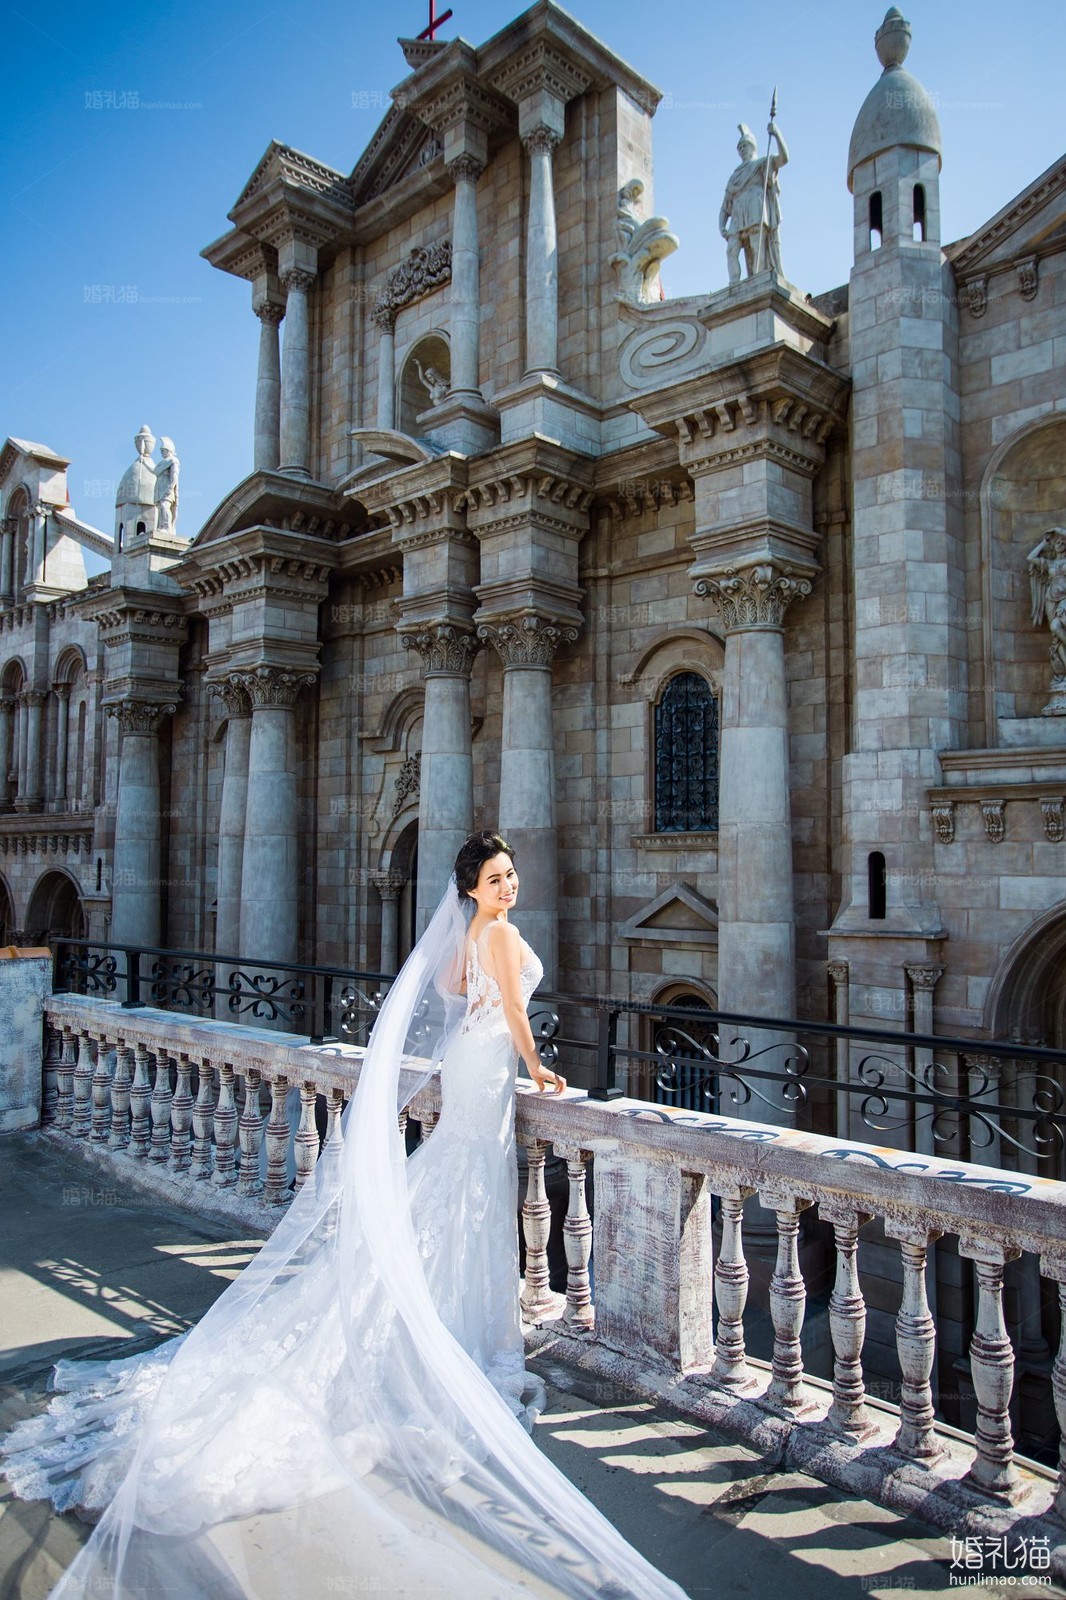 欧式结婚照|城堡婚纱照图片,[欧式, 城堡],深圳婚纱照,婚纱照图片